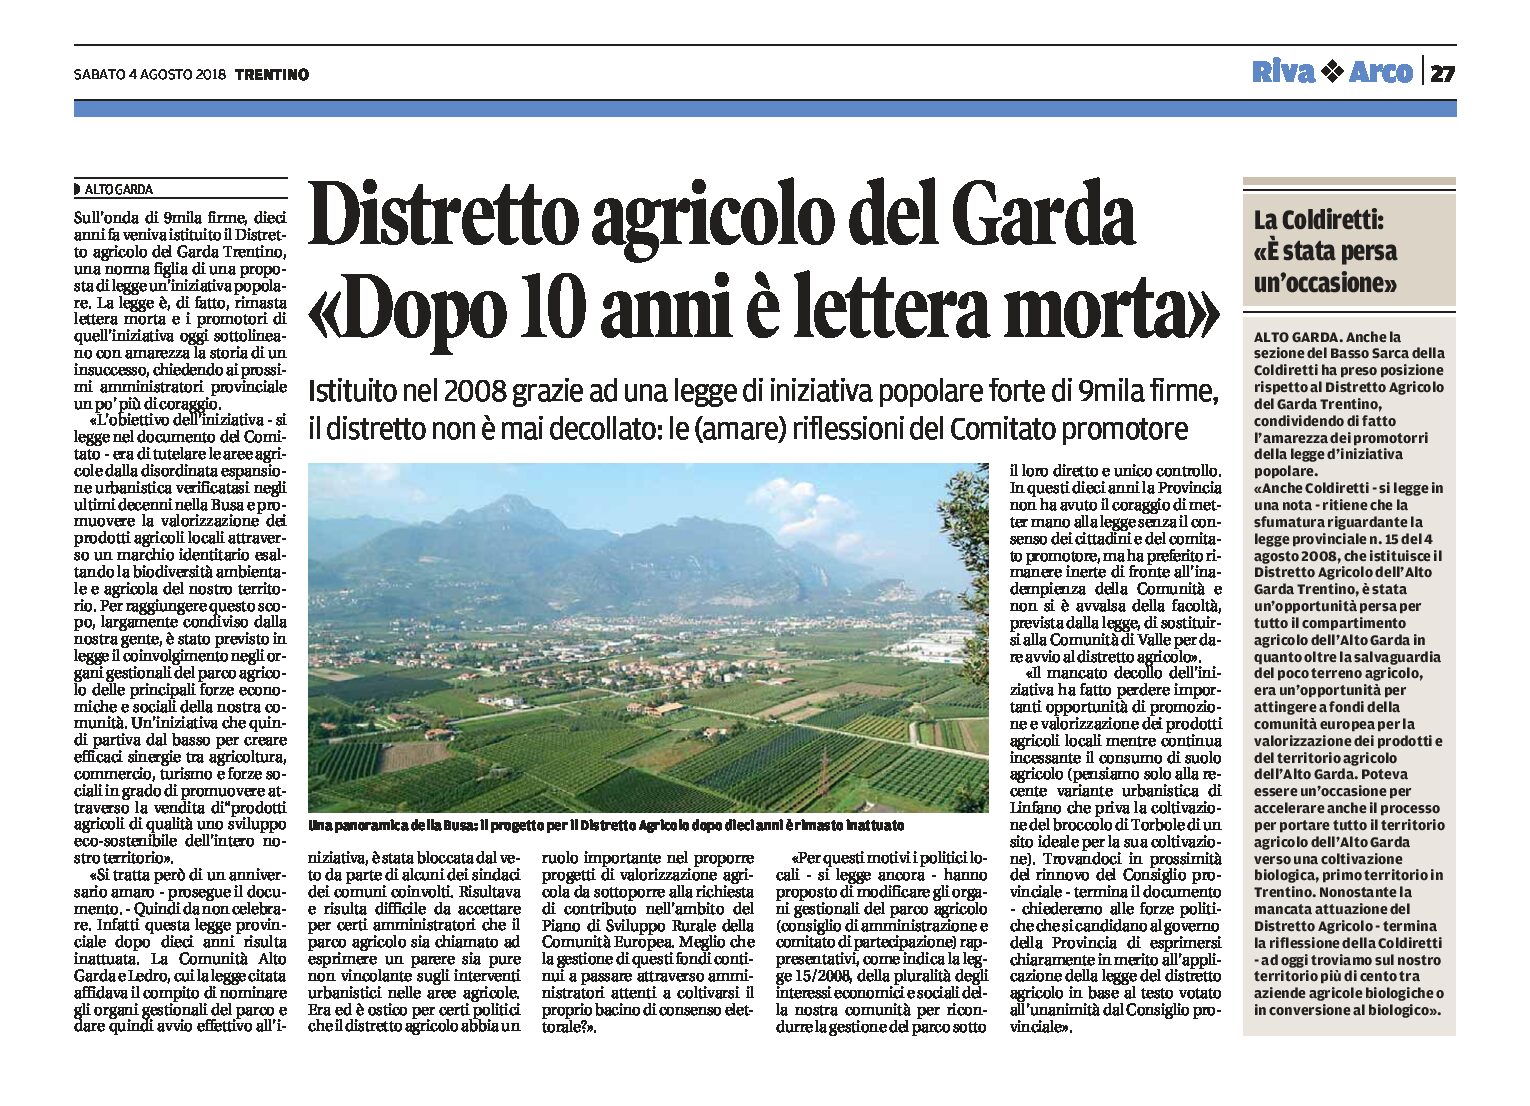 Alto Garda: Distretto agricolo del Garda Trentino “dopo 10 anni è lettera morta”